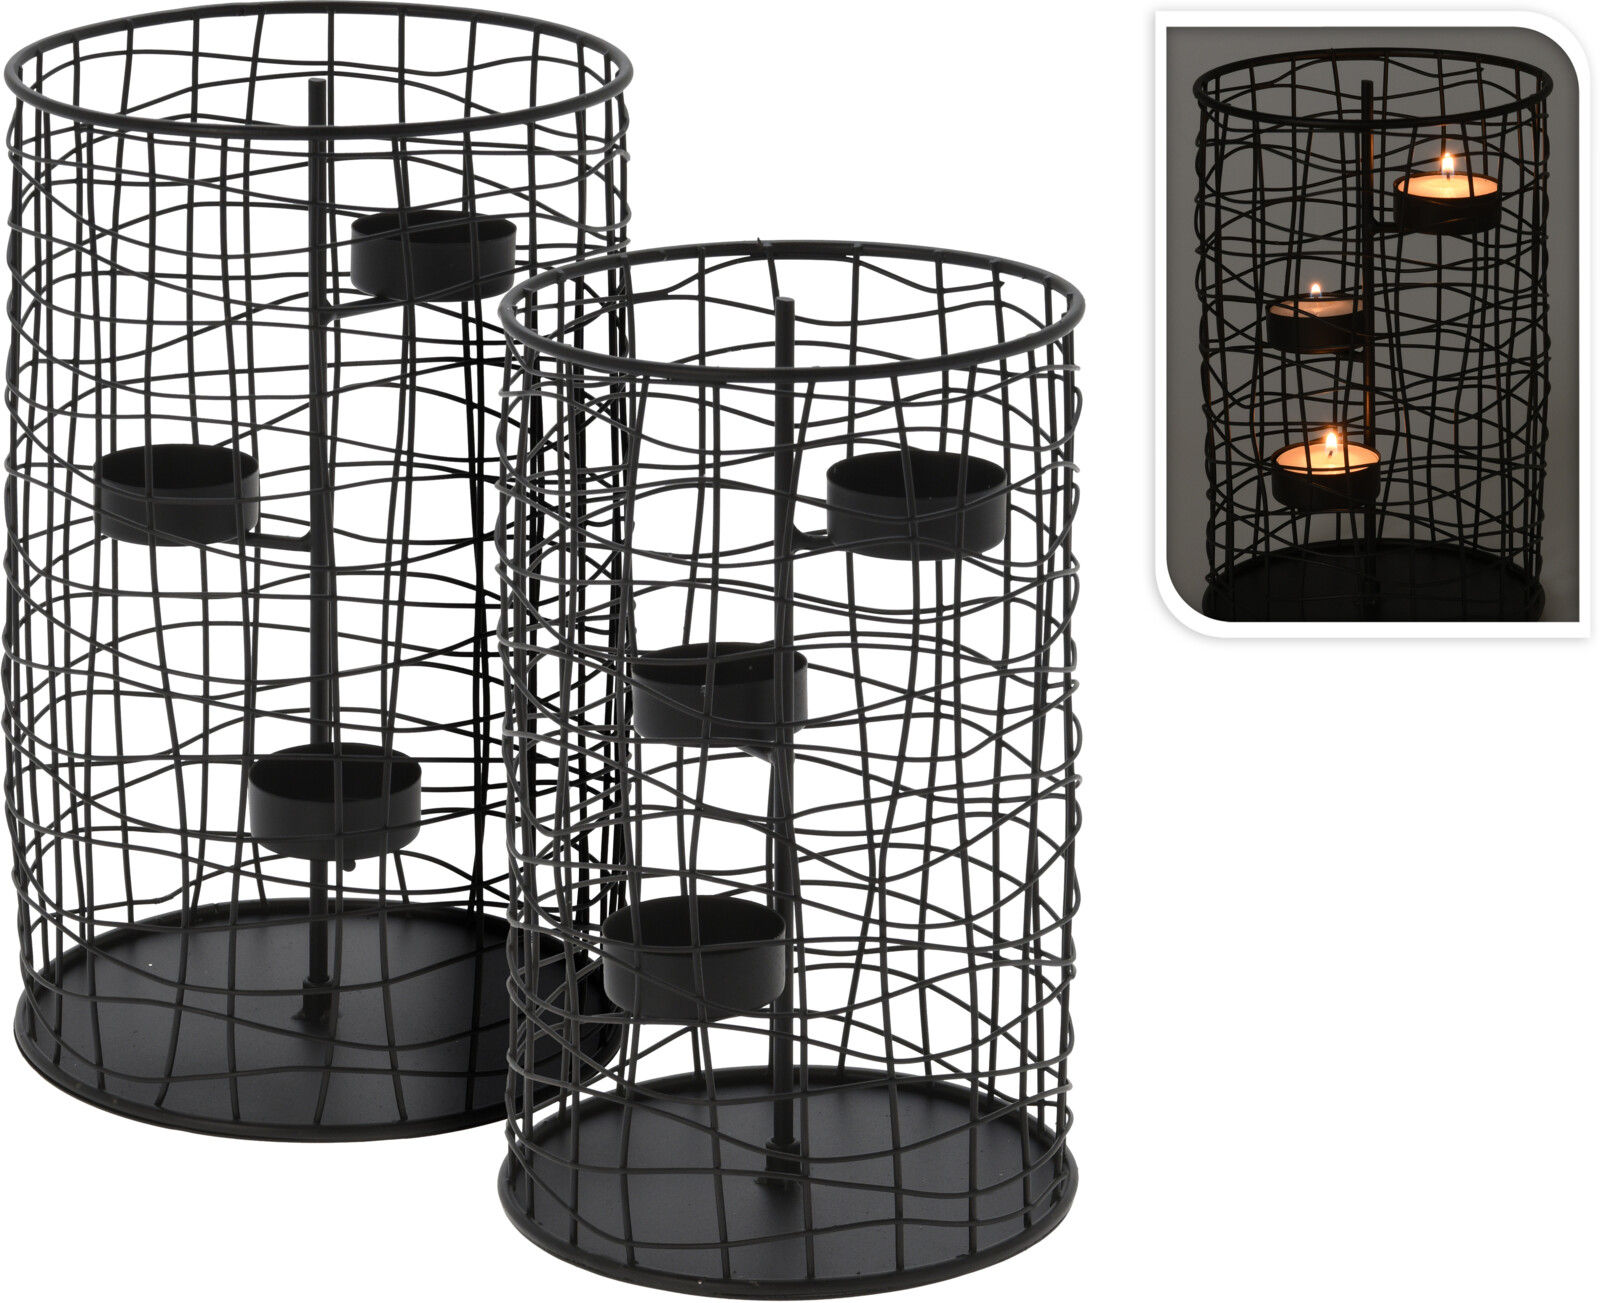 Metall Gitter Teelichthalter 2er Set schwarz - 25 / 21 cm - Drahtkorb Gitterkorb Kerzenständer rund für je 3 Teelichter